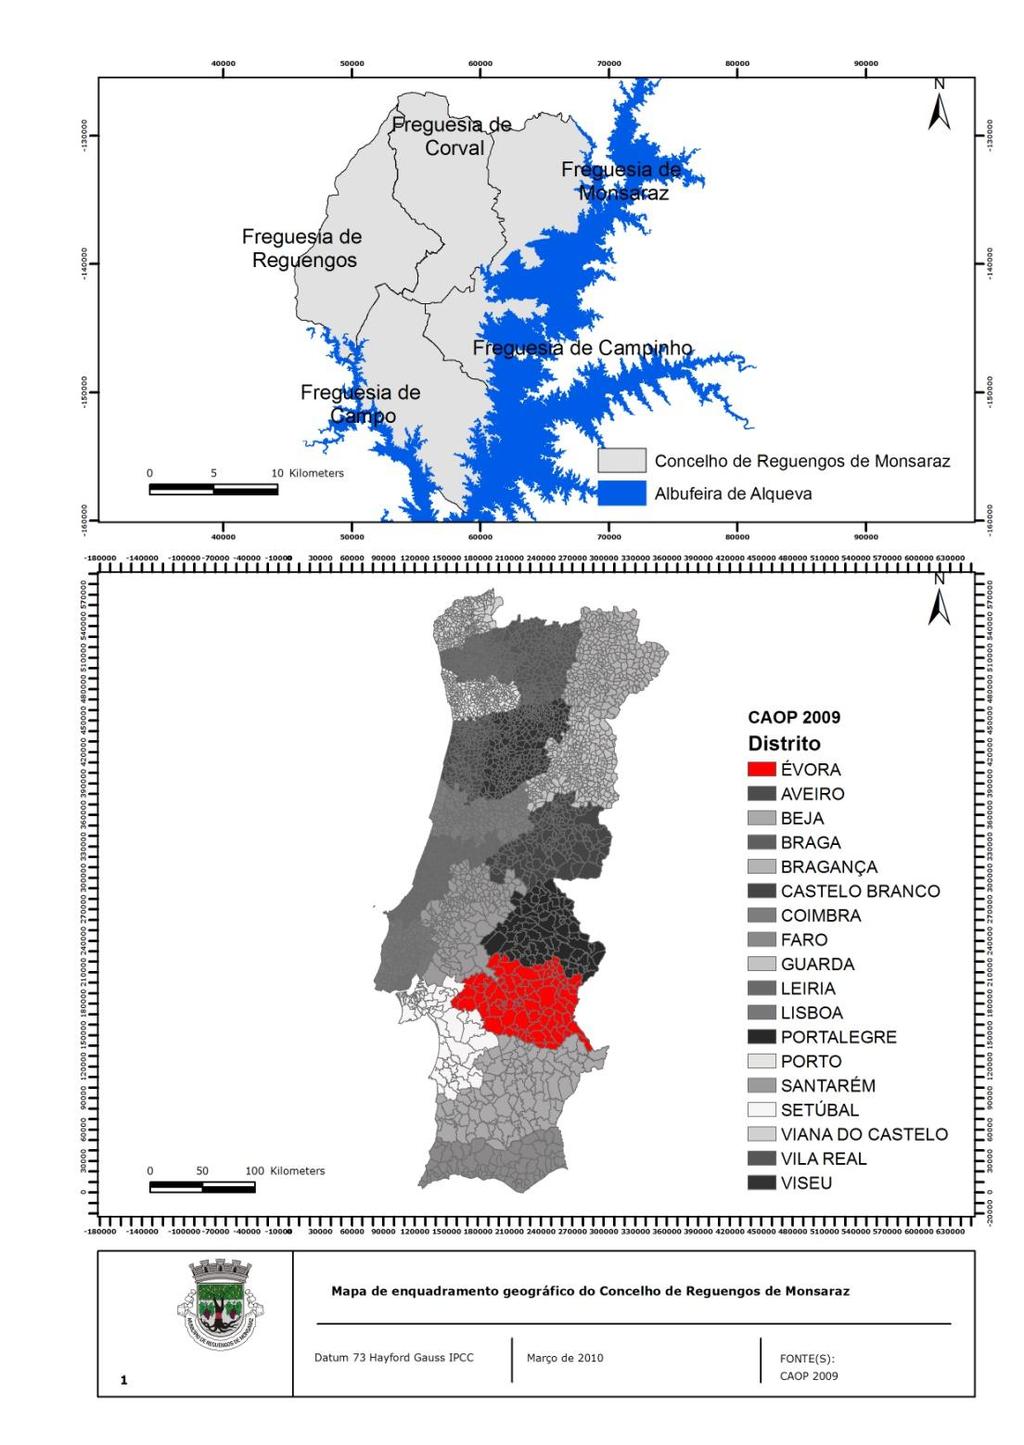 2. Enquadramento Geográfico do Concelho O Concelho do Reguengos de Monsaraz localiza-se na região do Alentejo, pertence ao distrito de Évora, à Direcção Regional das Florestas do Alentejo.